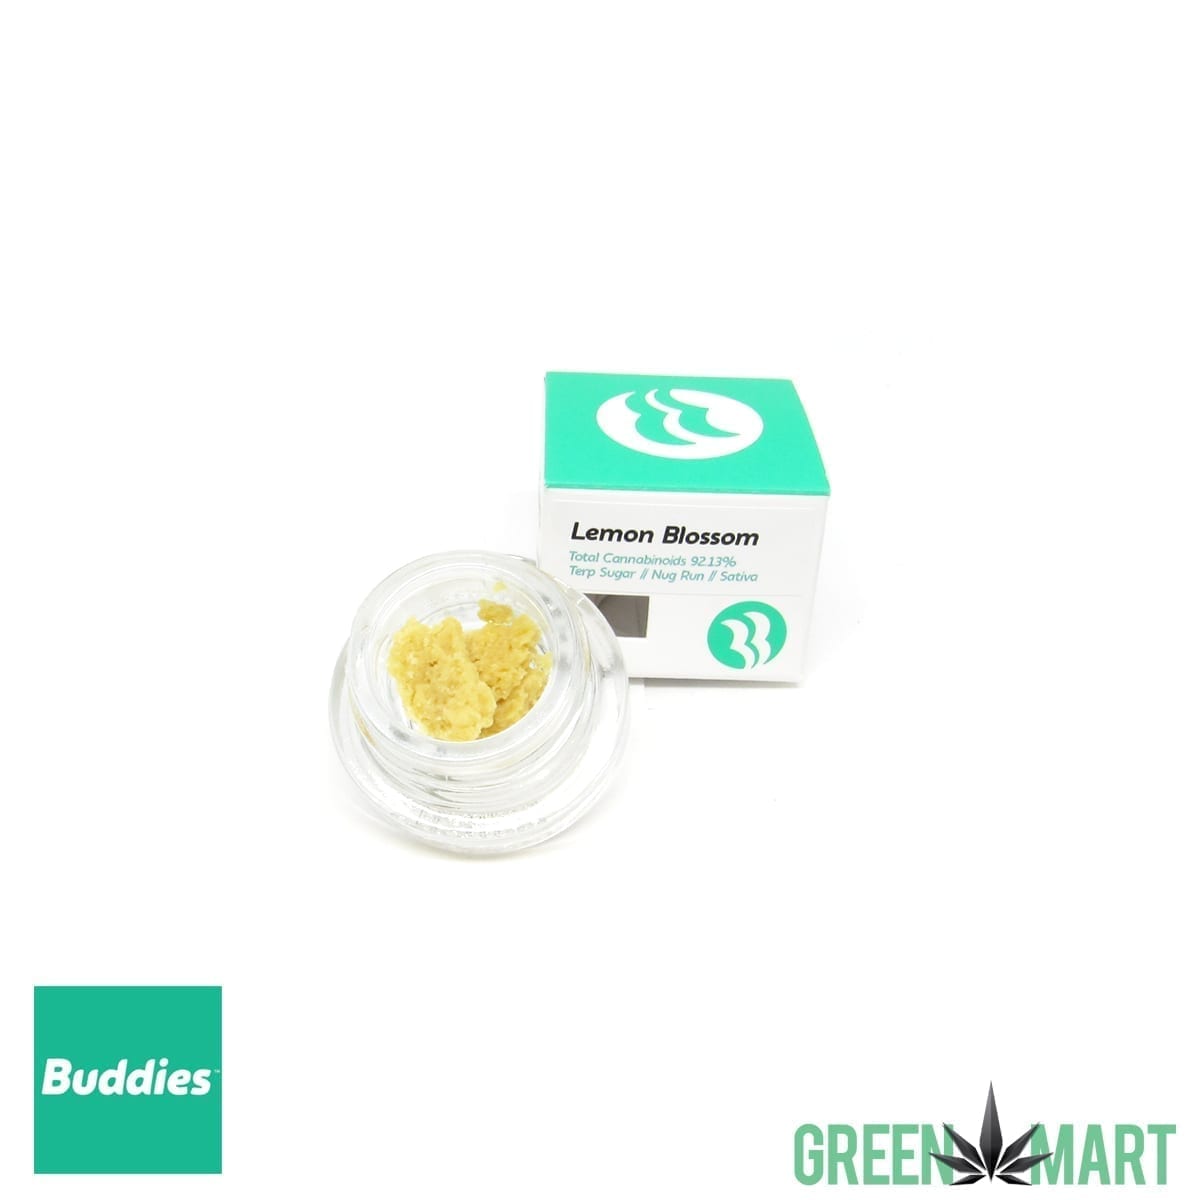 Buddies Brand Terp Sugar - Lemon Blossom